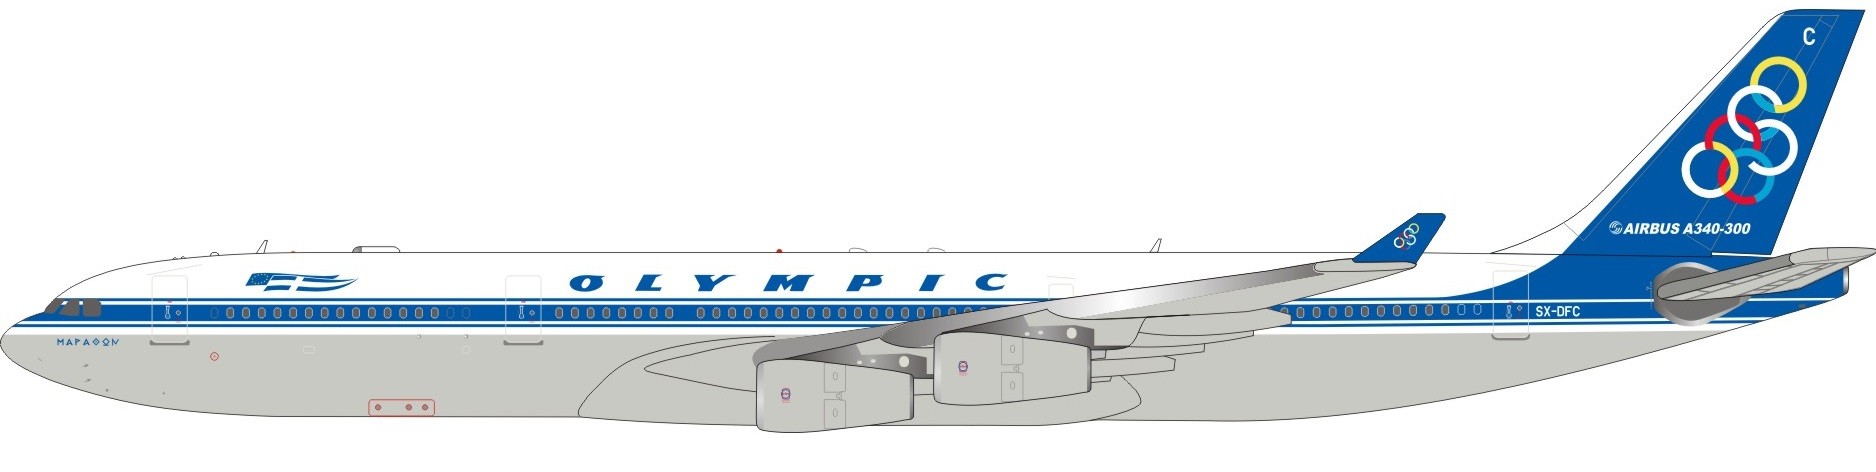 Inflight200 If3430517 1/200 Luft Jamaika Airbus A340-300 6y-jmp mit Ständer 